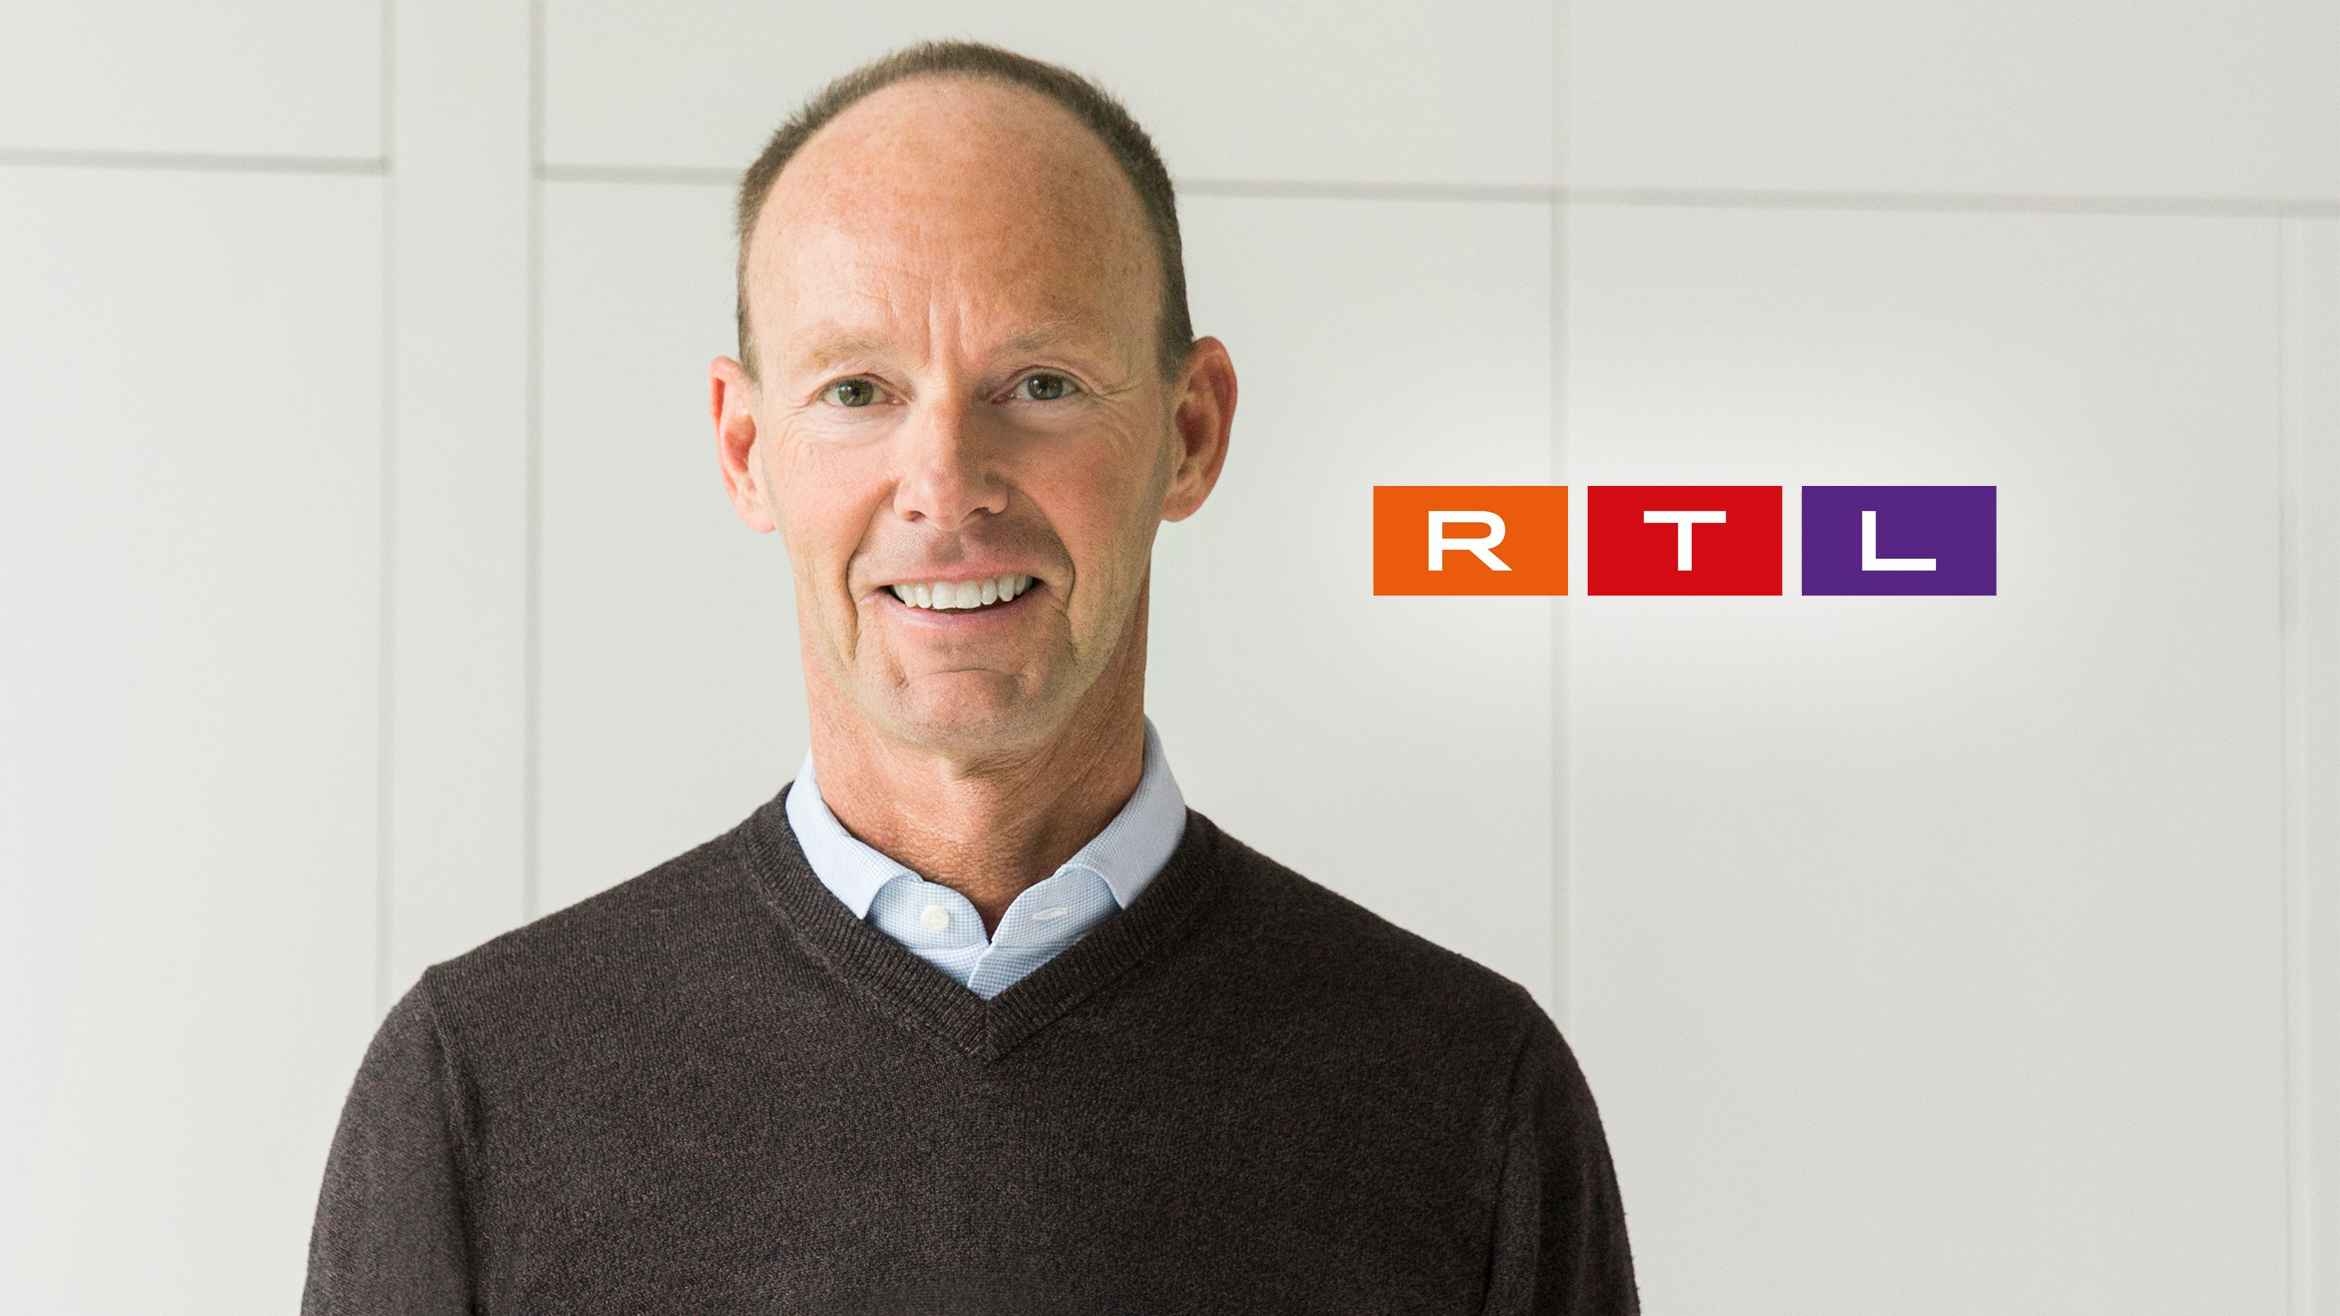 Warum die RTL Group wohl nur in Trippelschritten wächst